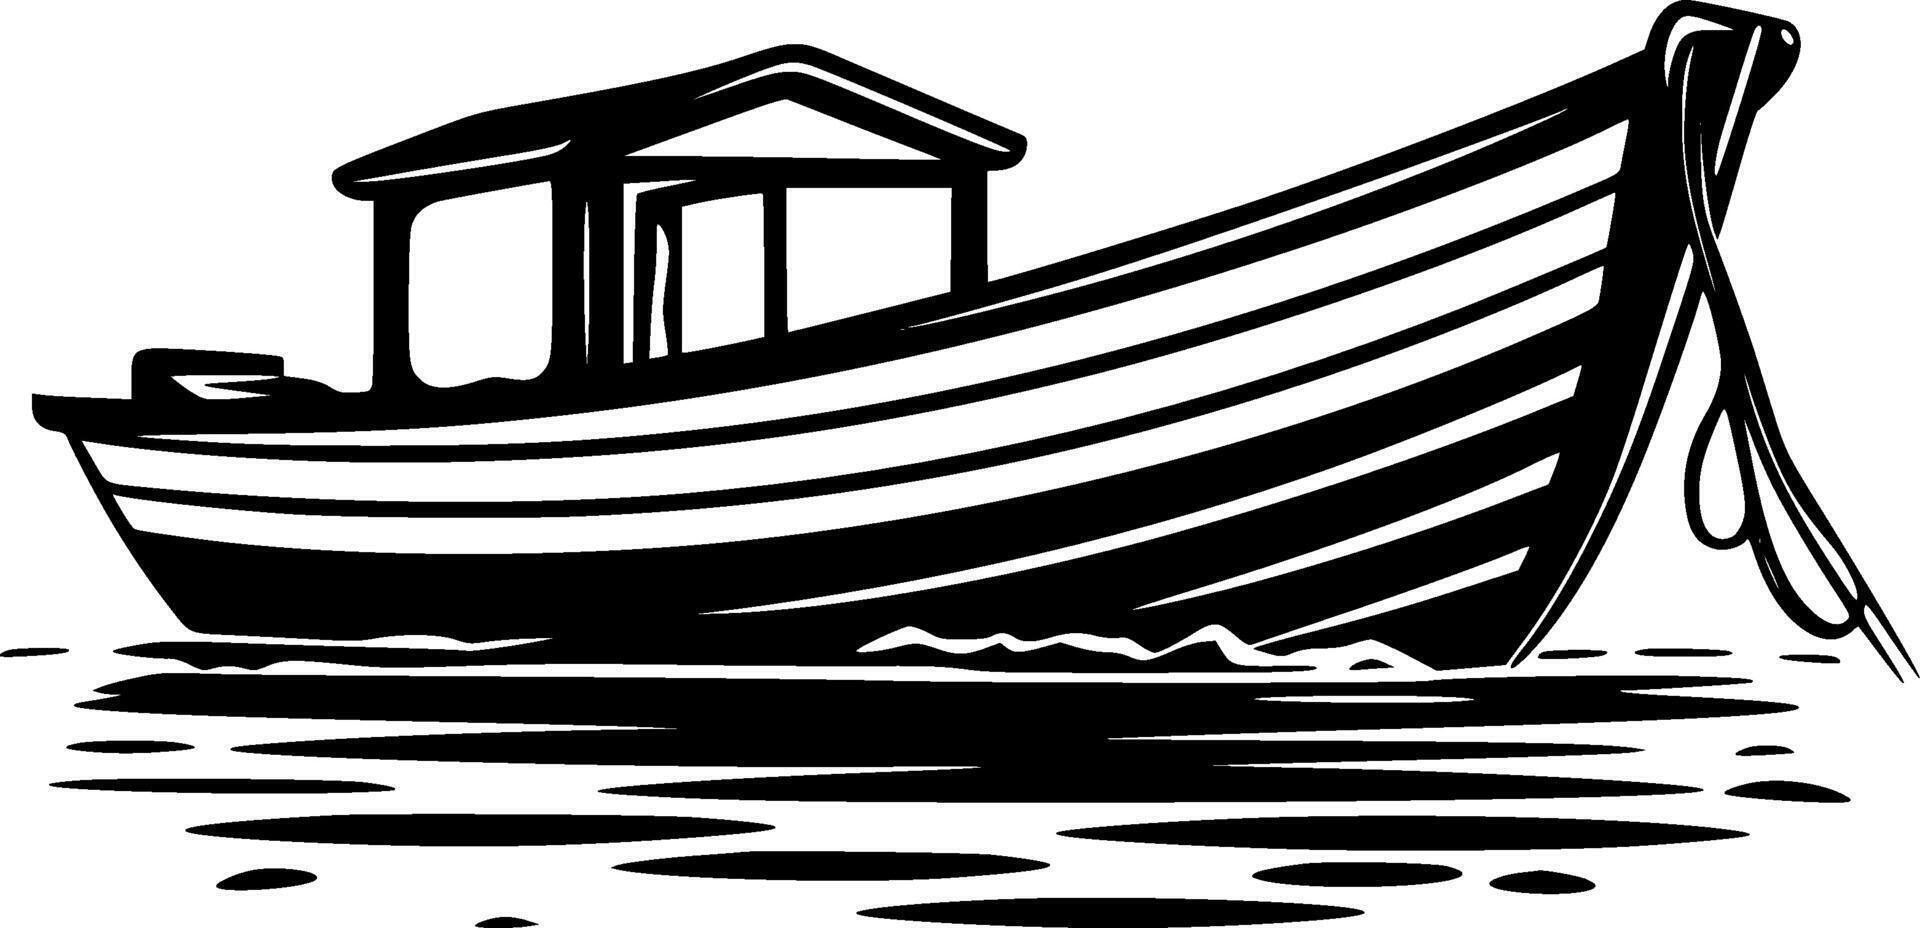 bateau - haute qualité logo - illustration idéal pour T-shirt graphique vecteur